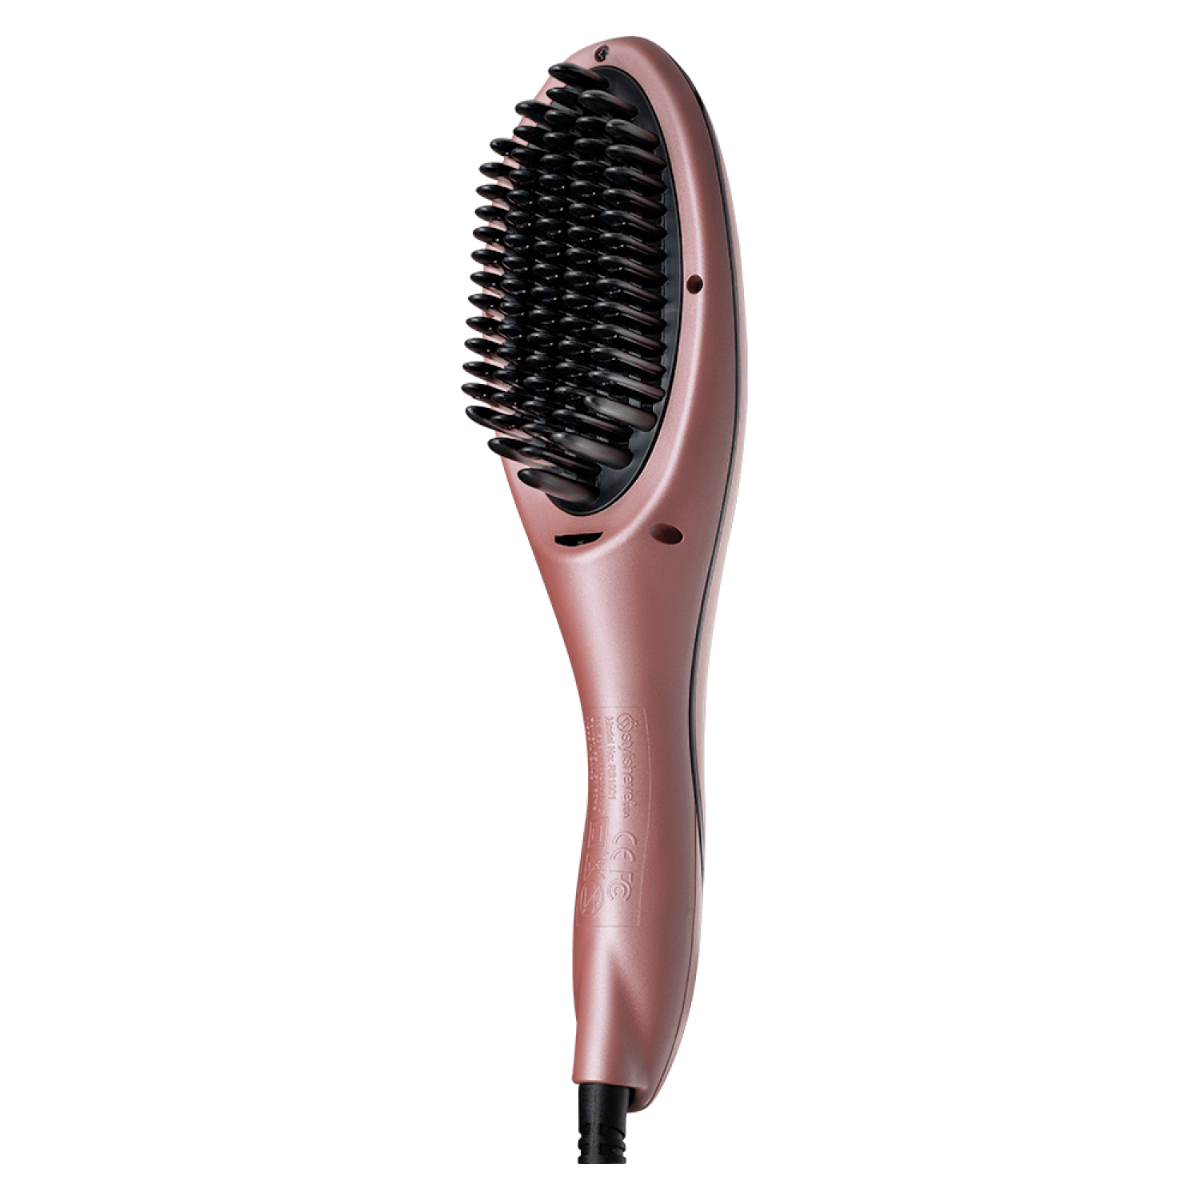 Rush Brush Hair Straightening Brush, Rose Gold - S3 - Hair Stylers